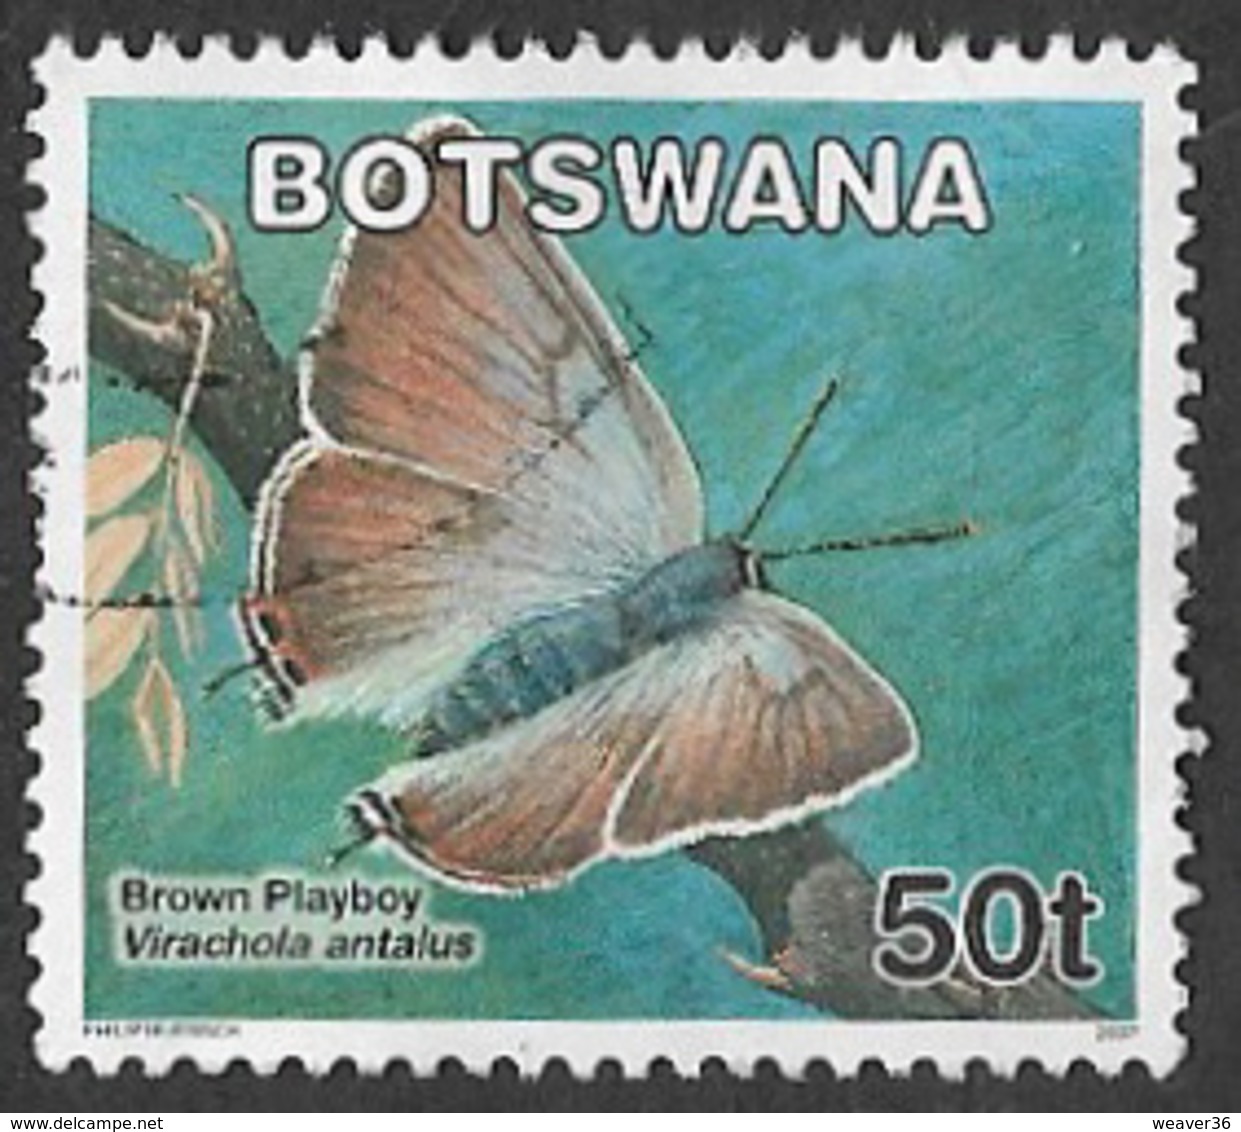 Botswana 2007 Definitive 50t Good/fine Used [37/30961/ND] - Botswana (1966-...)